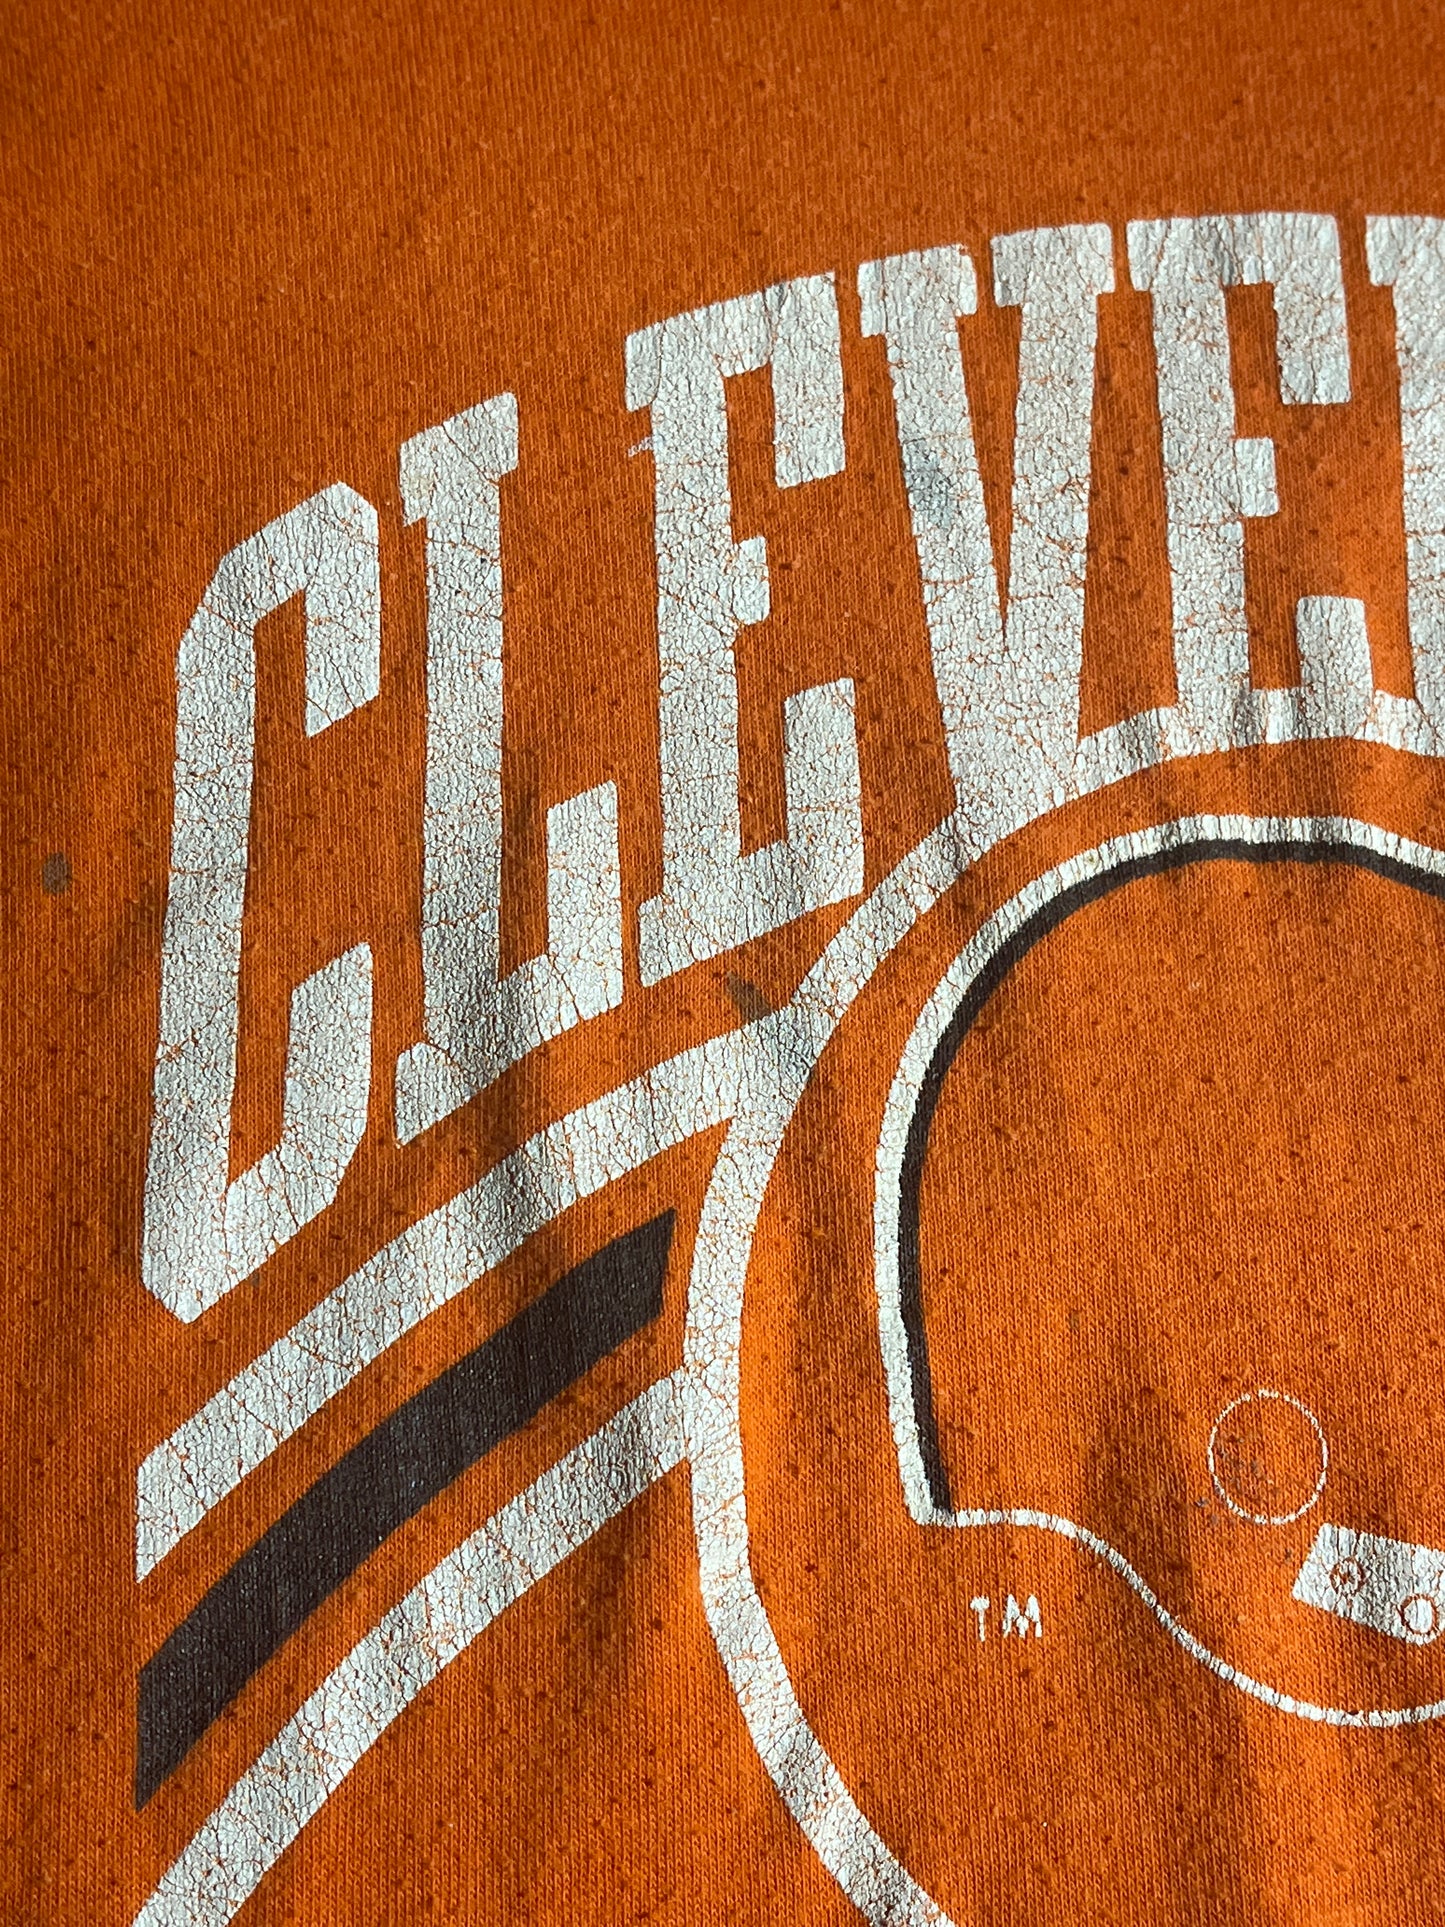 Vintage Cleveland Browns T-Shirt